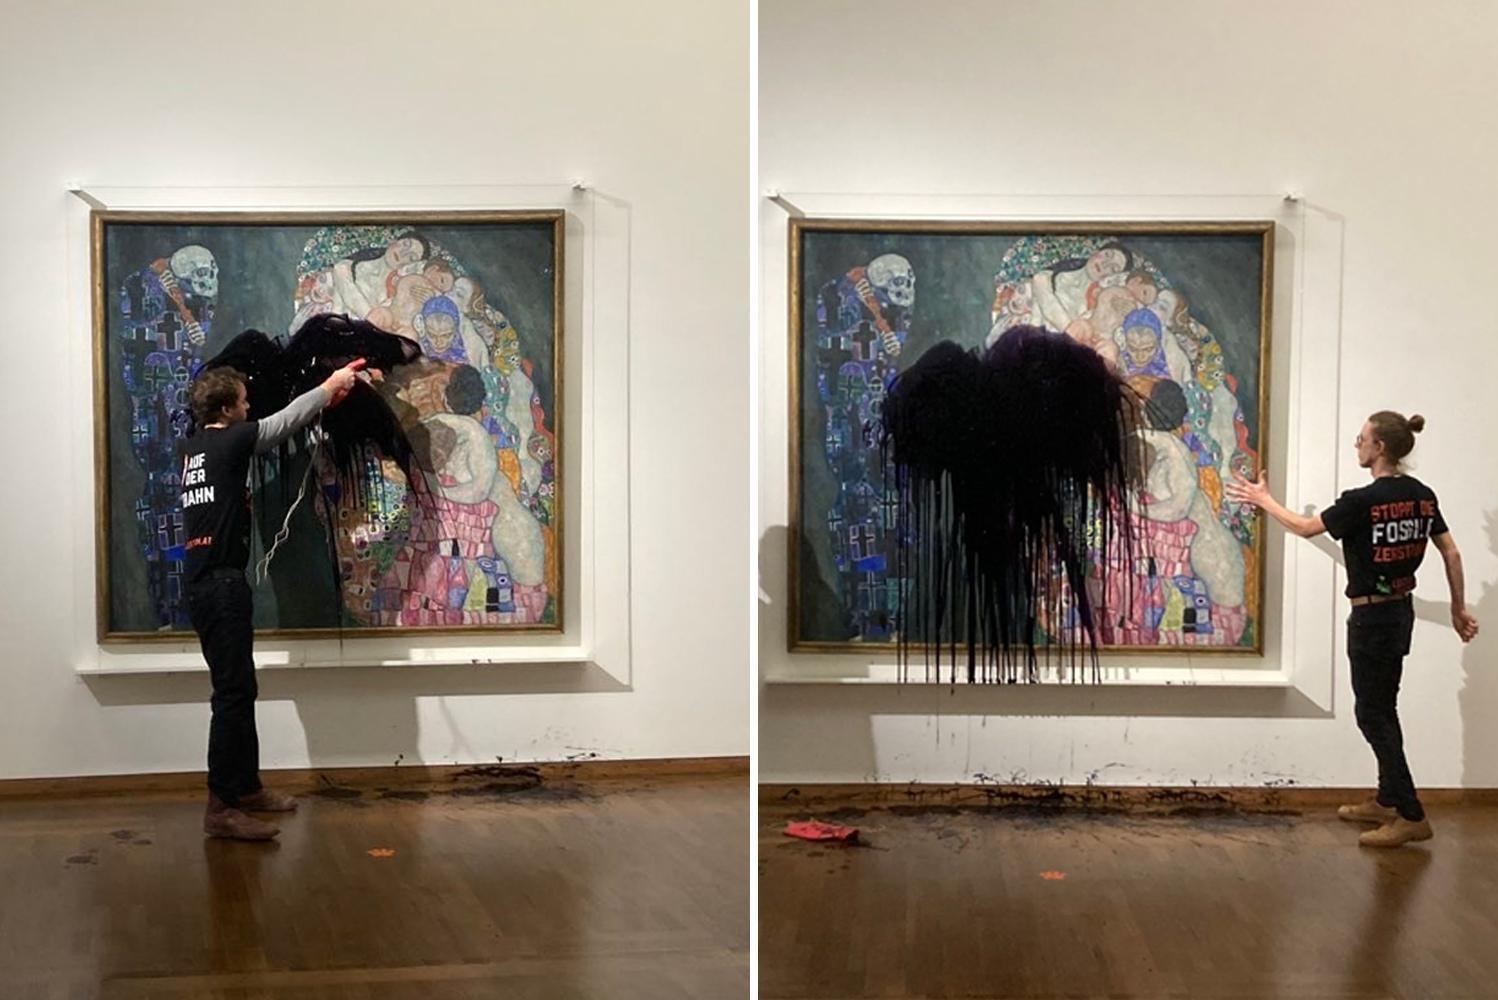 Climate activists deface work by Gustav Klimt in Vienna